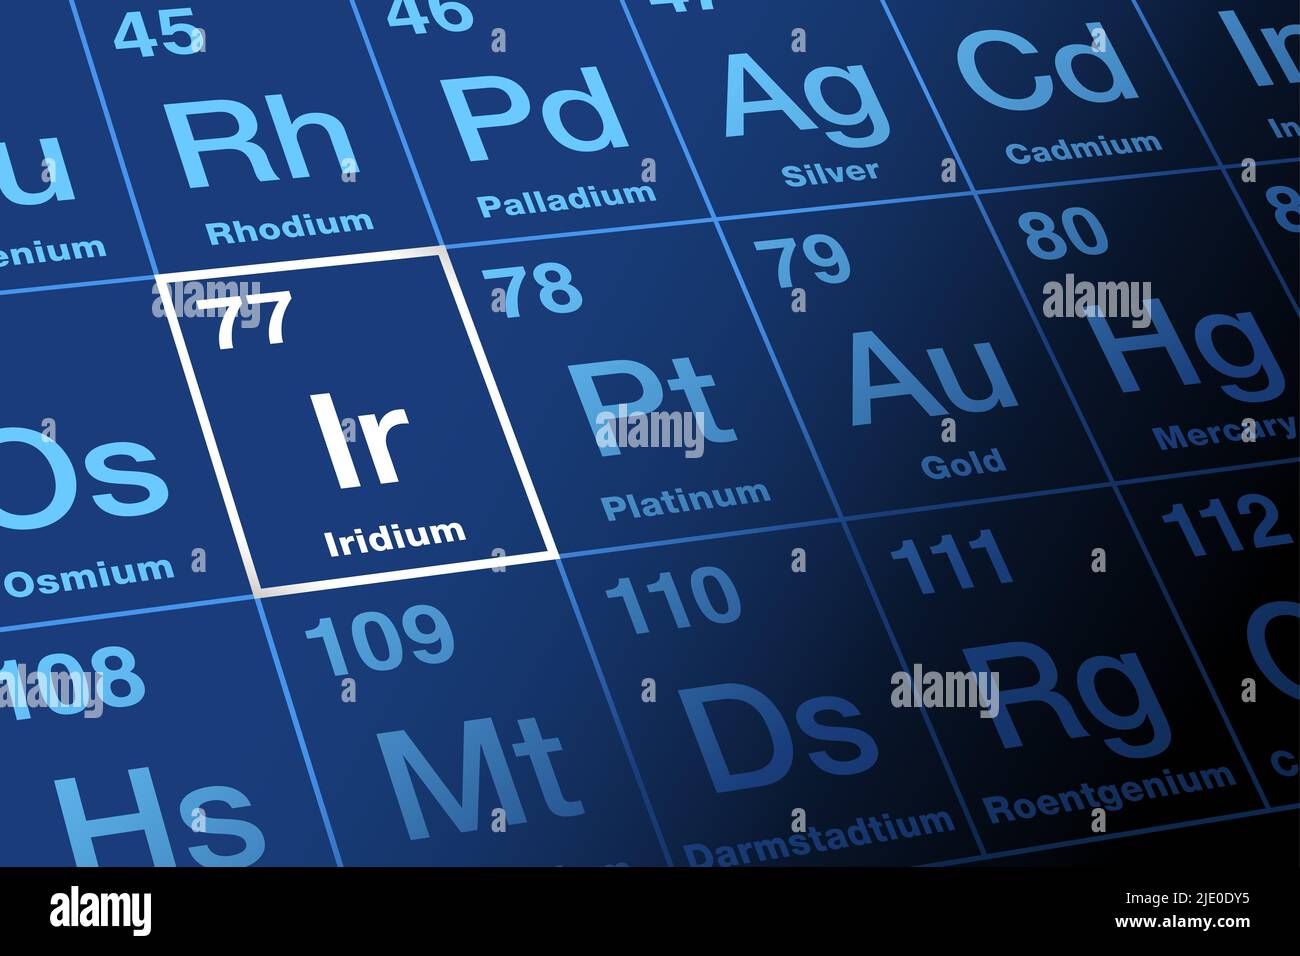 Iridium im Periodensystem. Chemisches Element mit dem Symbol IR, benannt nach der griechischen Göttin Iris und mit der Ordnungszahl 77. Übergangsmetall. Stockfoto